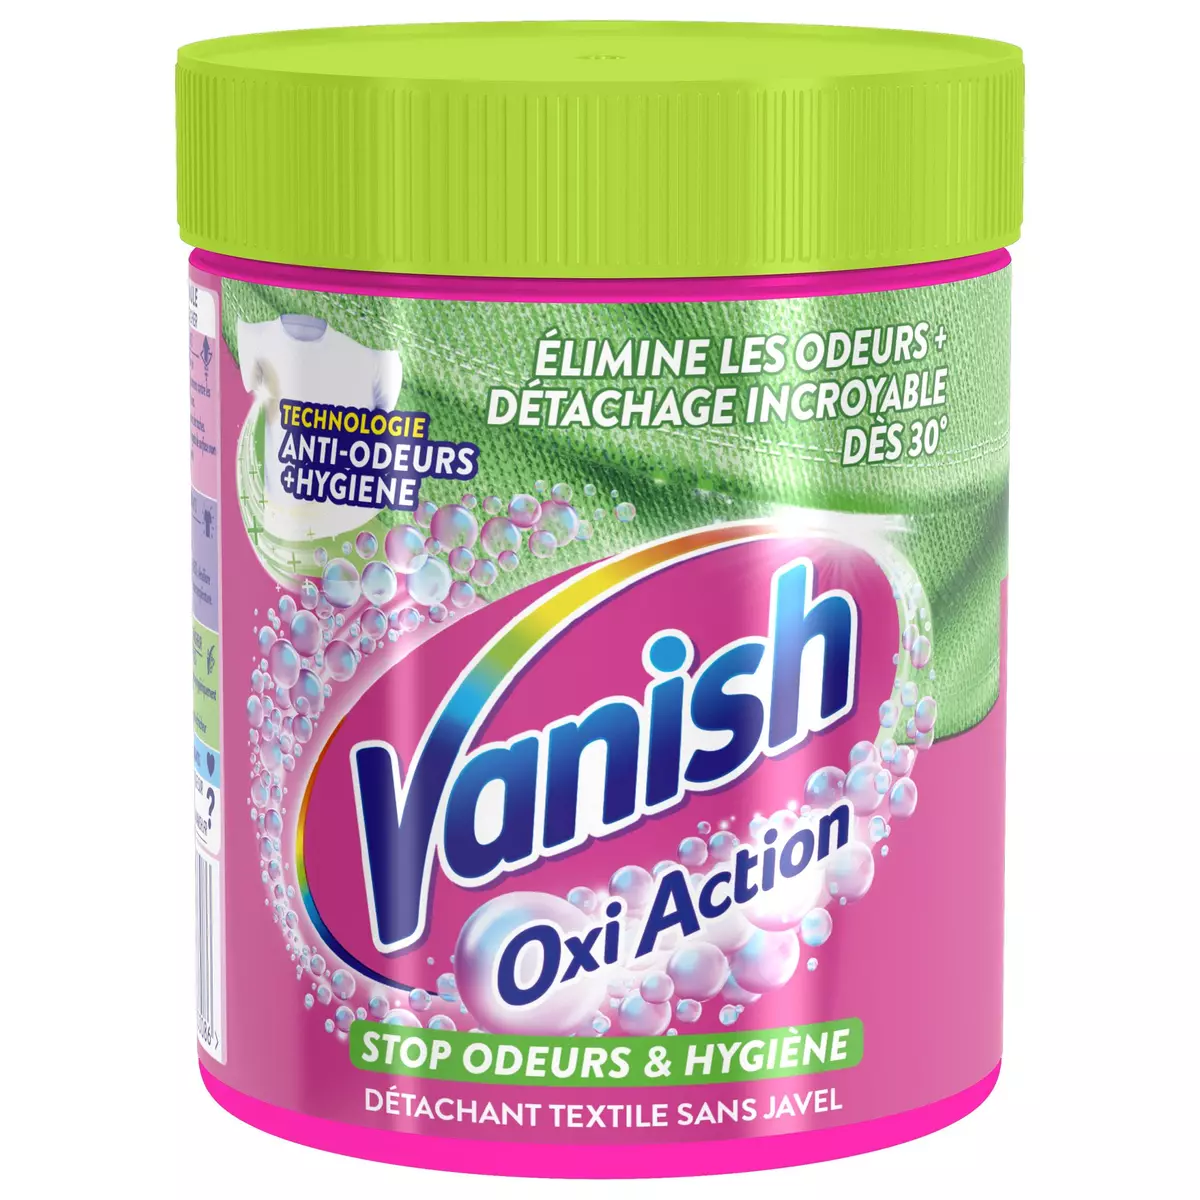 VANISH Oxi Action détachant textile stop odeur 470g